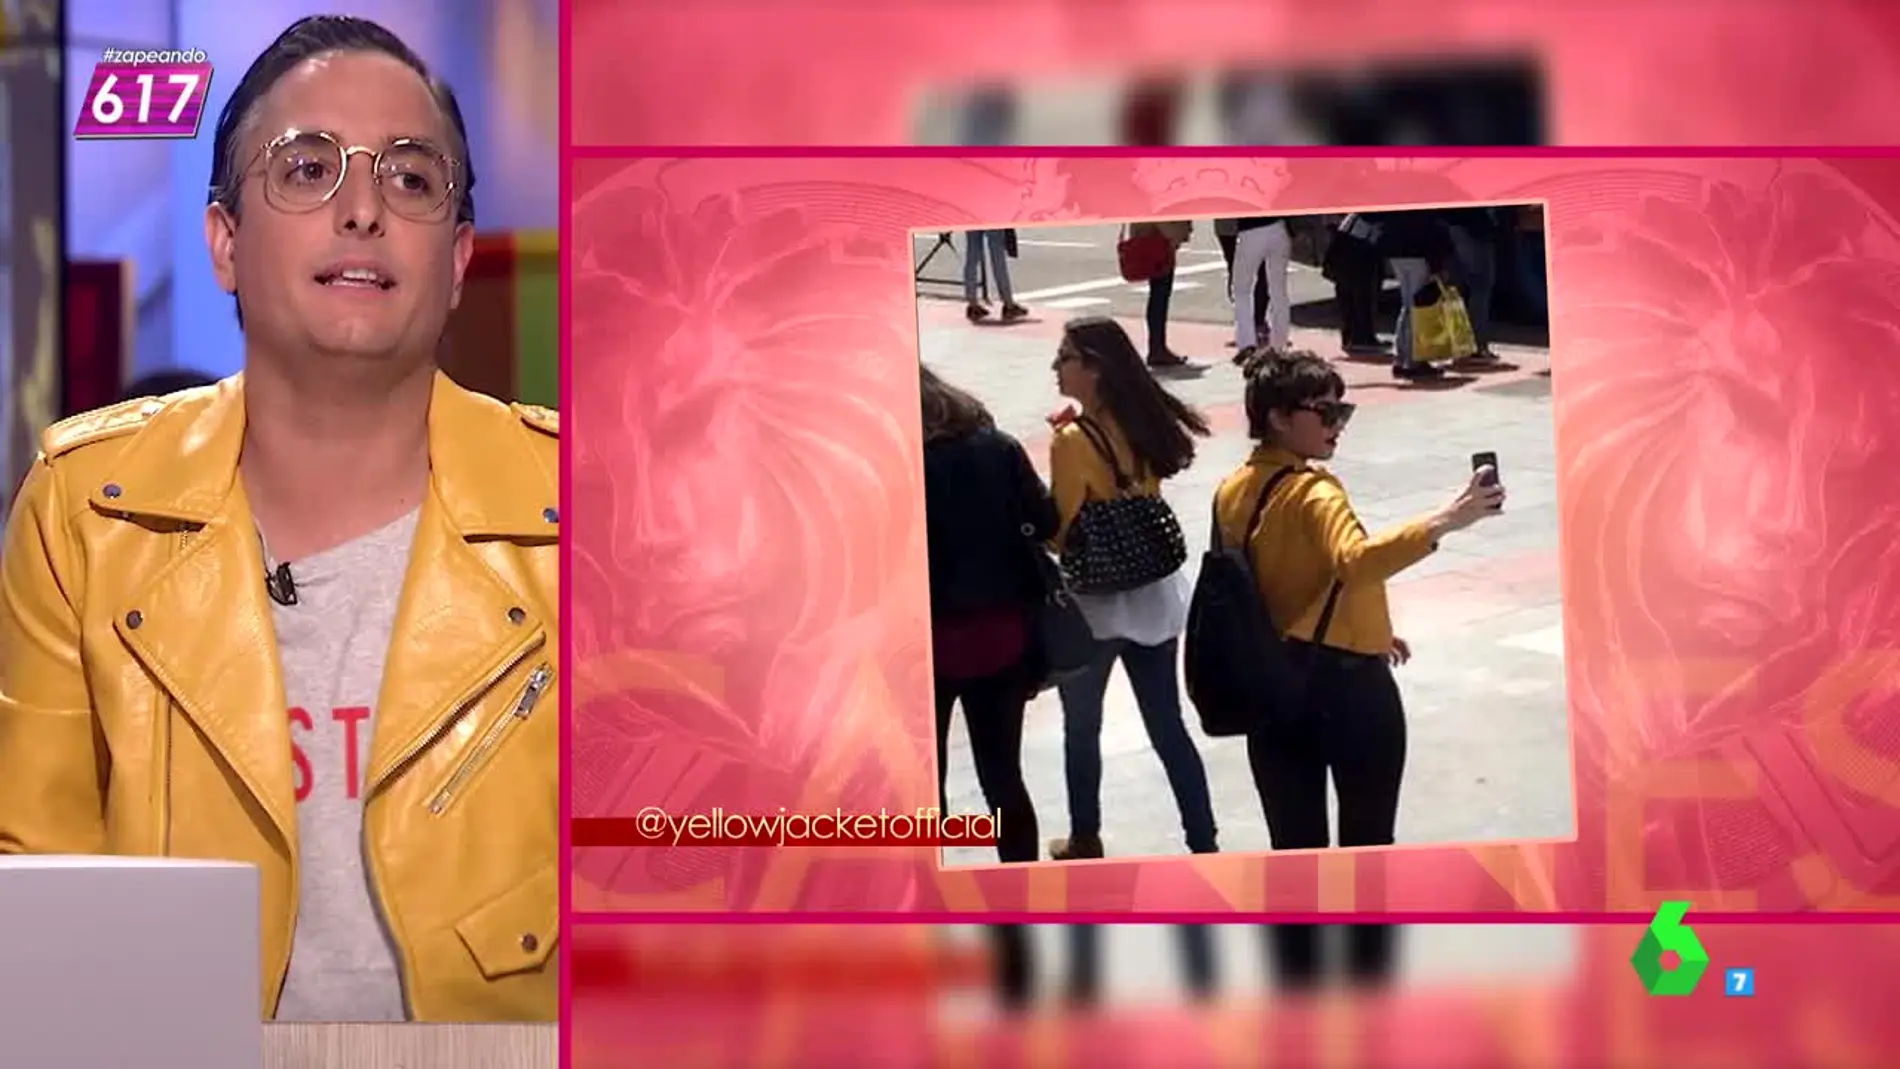 ¿Por qué todo el mundo, incluso Josie, lleva la famosa chaqueta amarilla? 